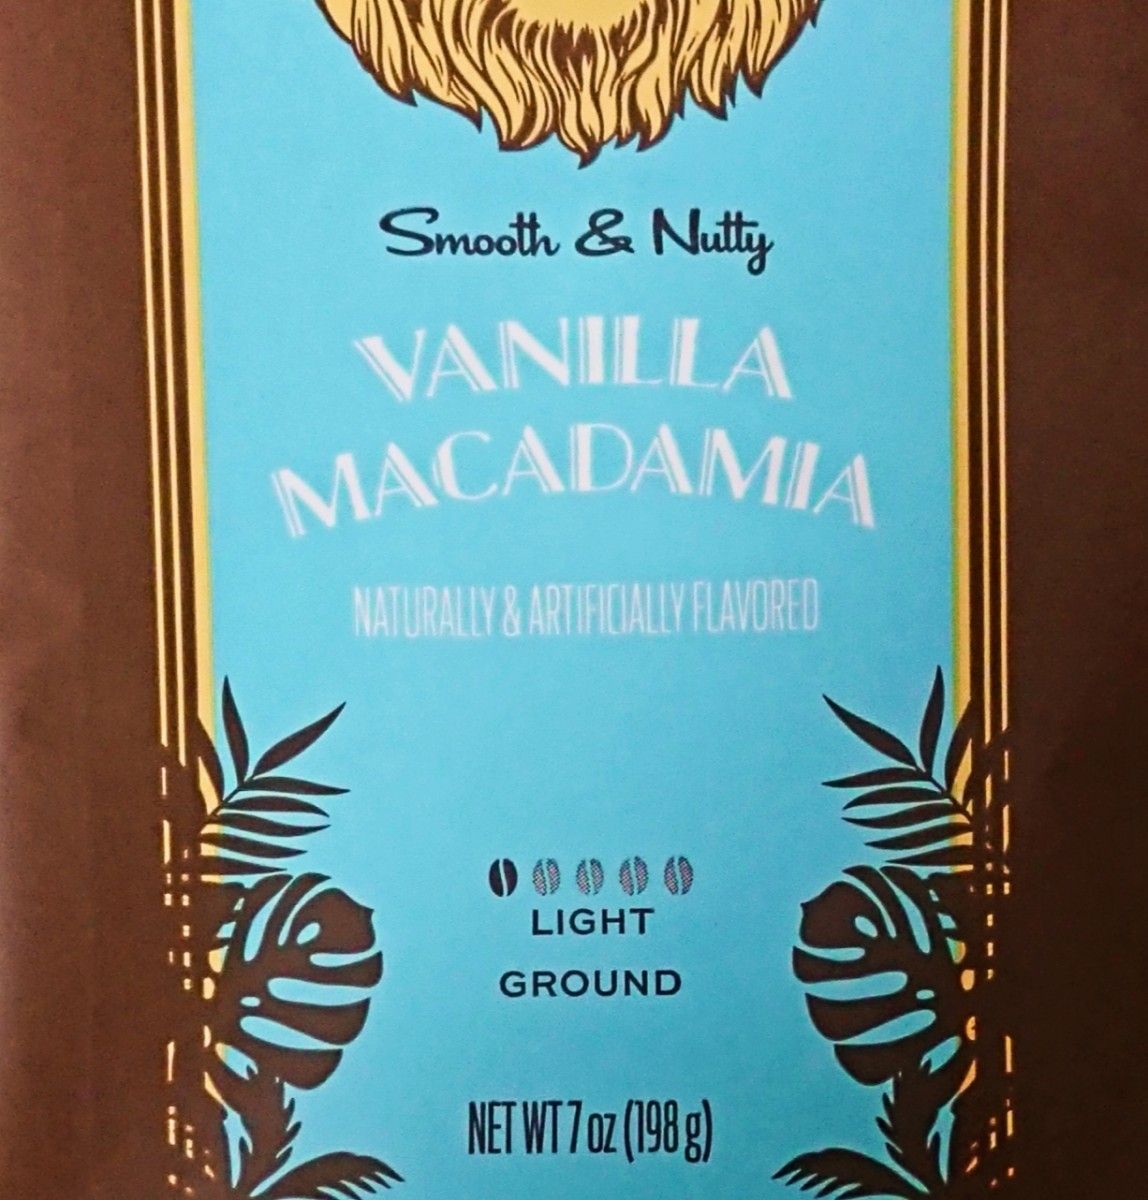 ライオンコーヒー バニラマカダミア バニラキャラメル 198g×2 バニラ2種 Lion coffee ハワイ フレーバーコーヒー